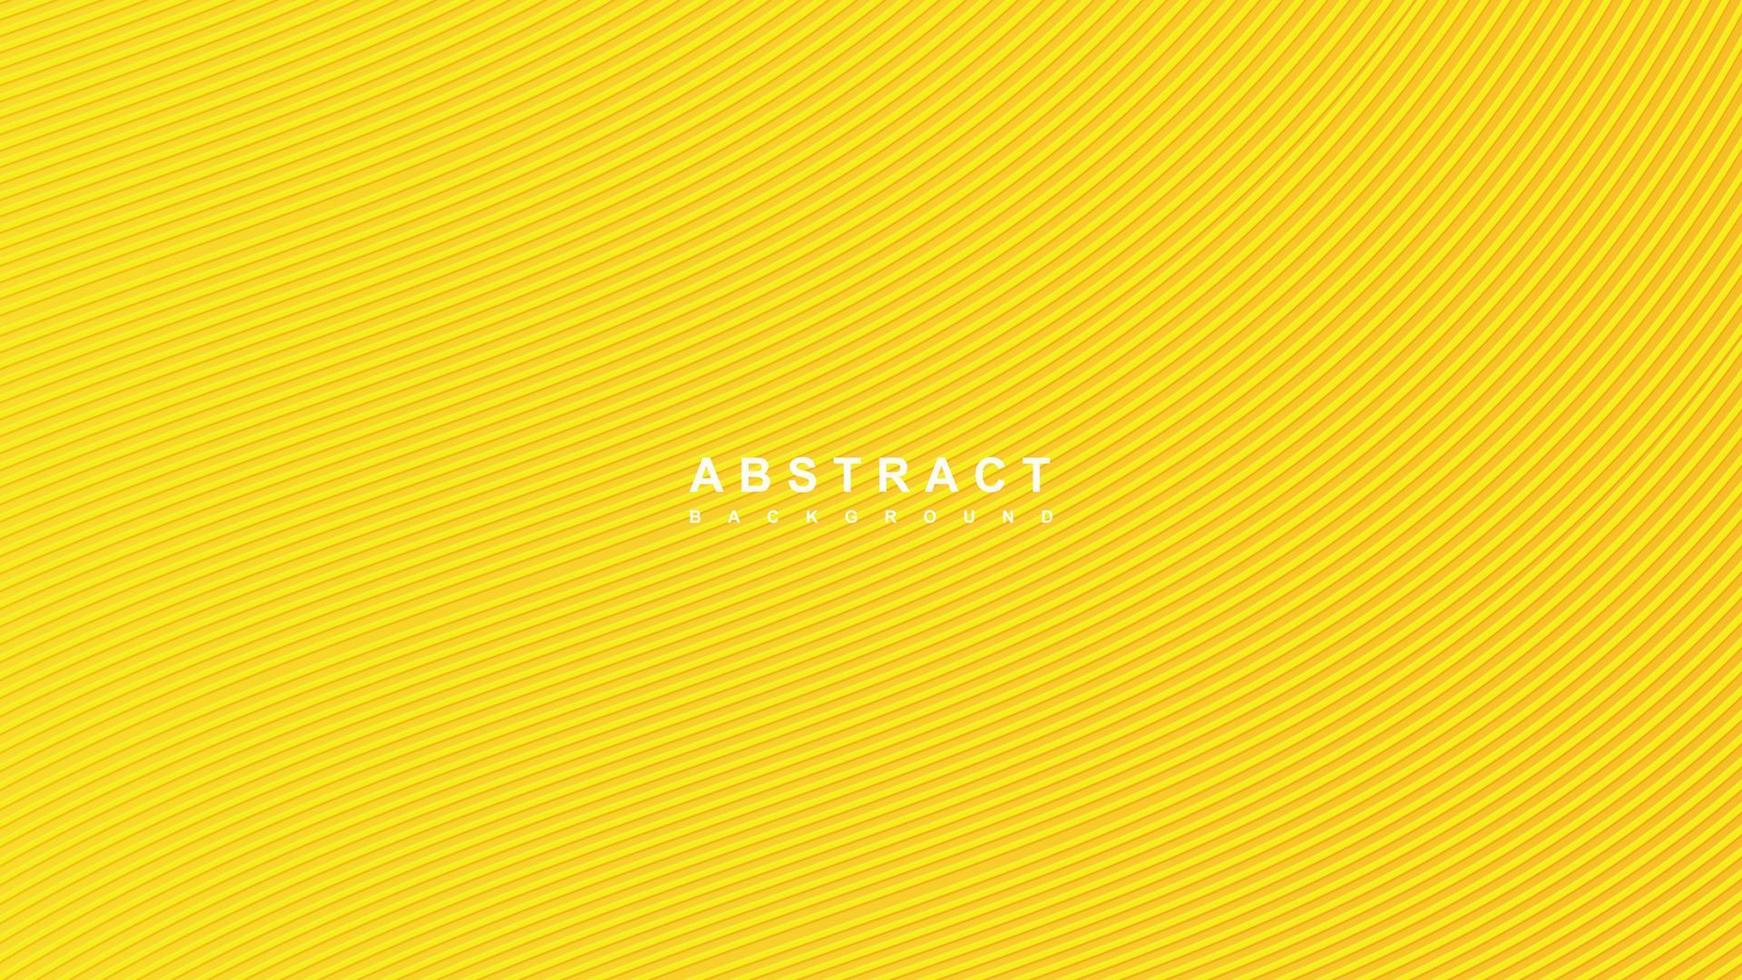 courbe de vague moderne 3d jaune papier de luxe coupé illustration vectorielle de fond vecteur